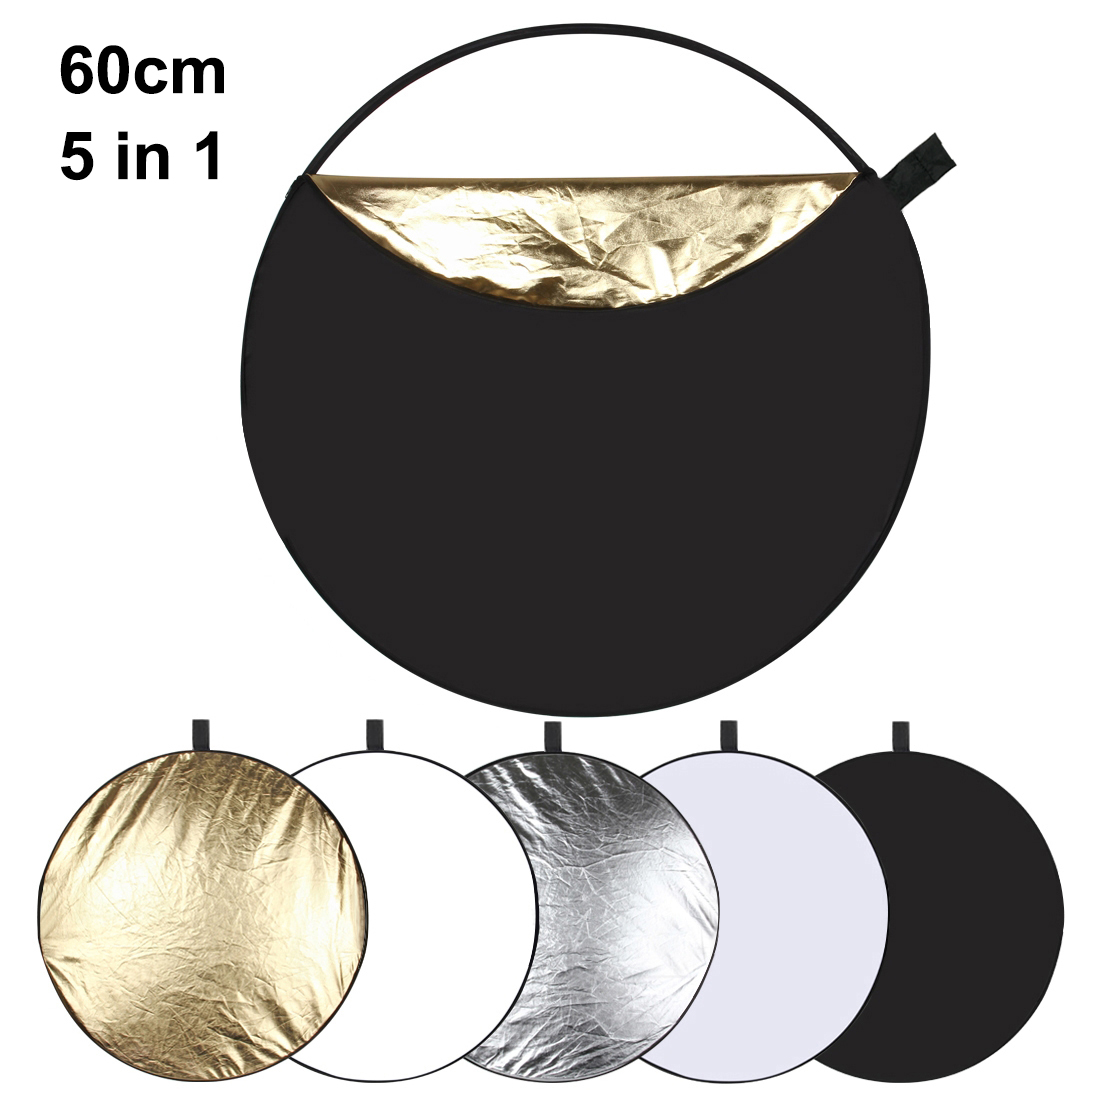 PULUZ-PU5111-60cm-5-in-1-Folding-Photo-Studio-Reflector-Board-Silver-Translucent-Gold-White-Black-1244272-1